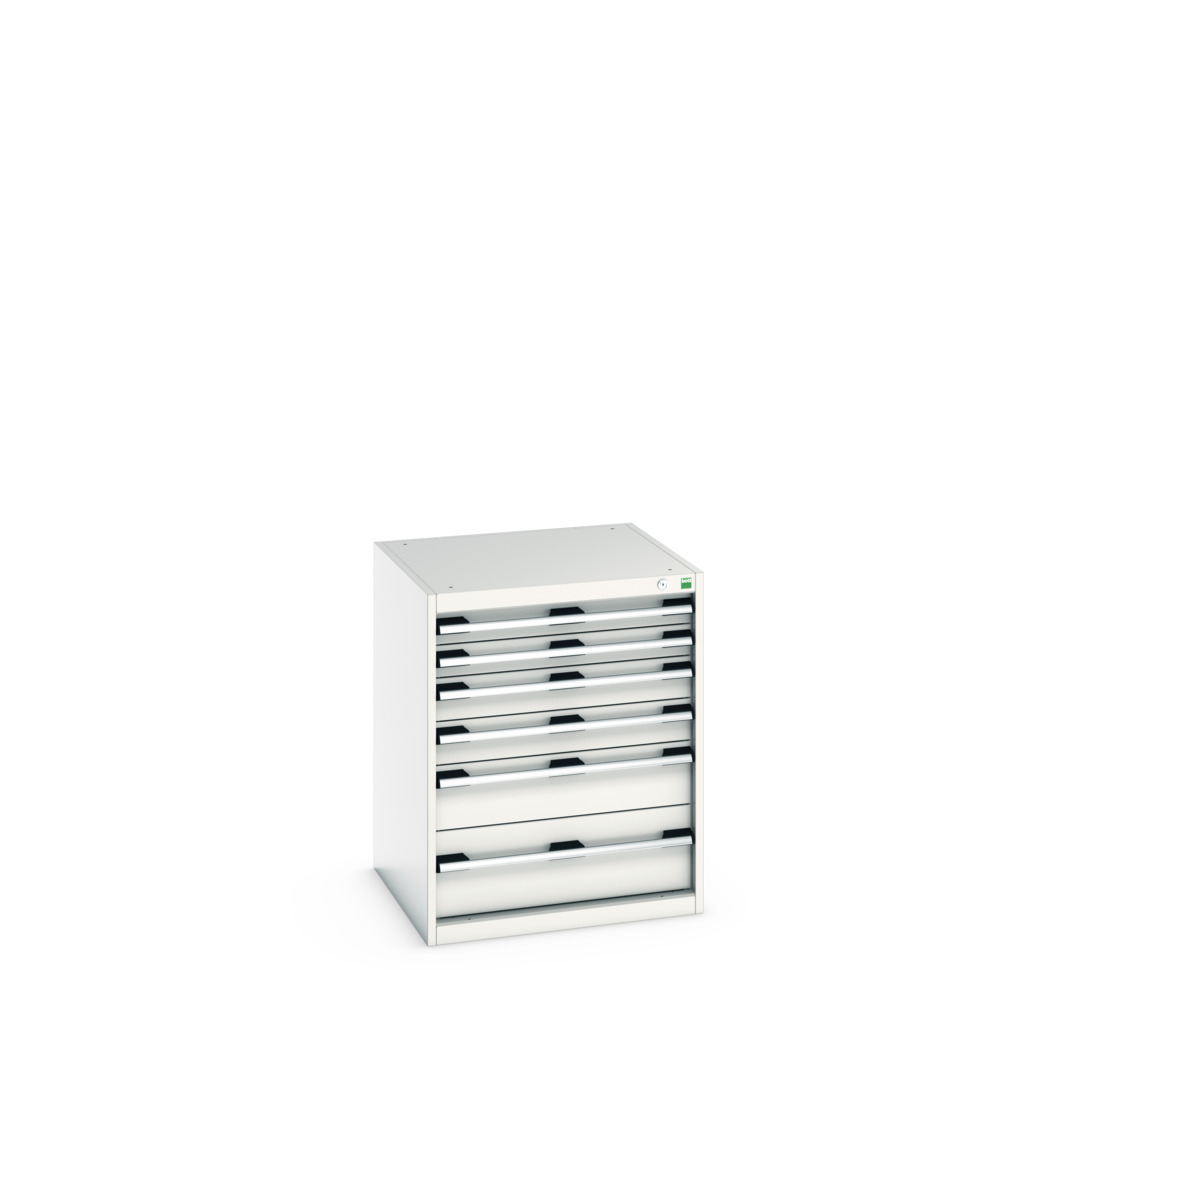 40019039.16V - cubio drawer cabinet